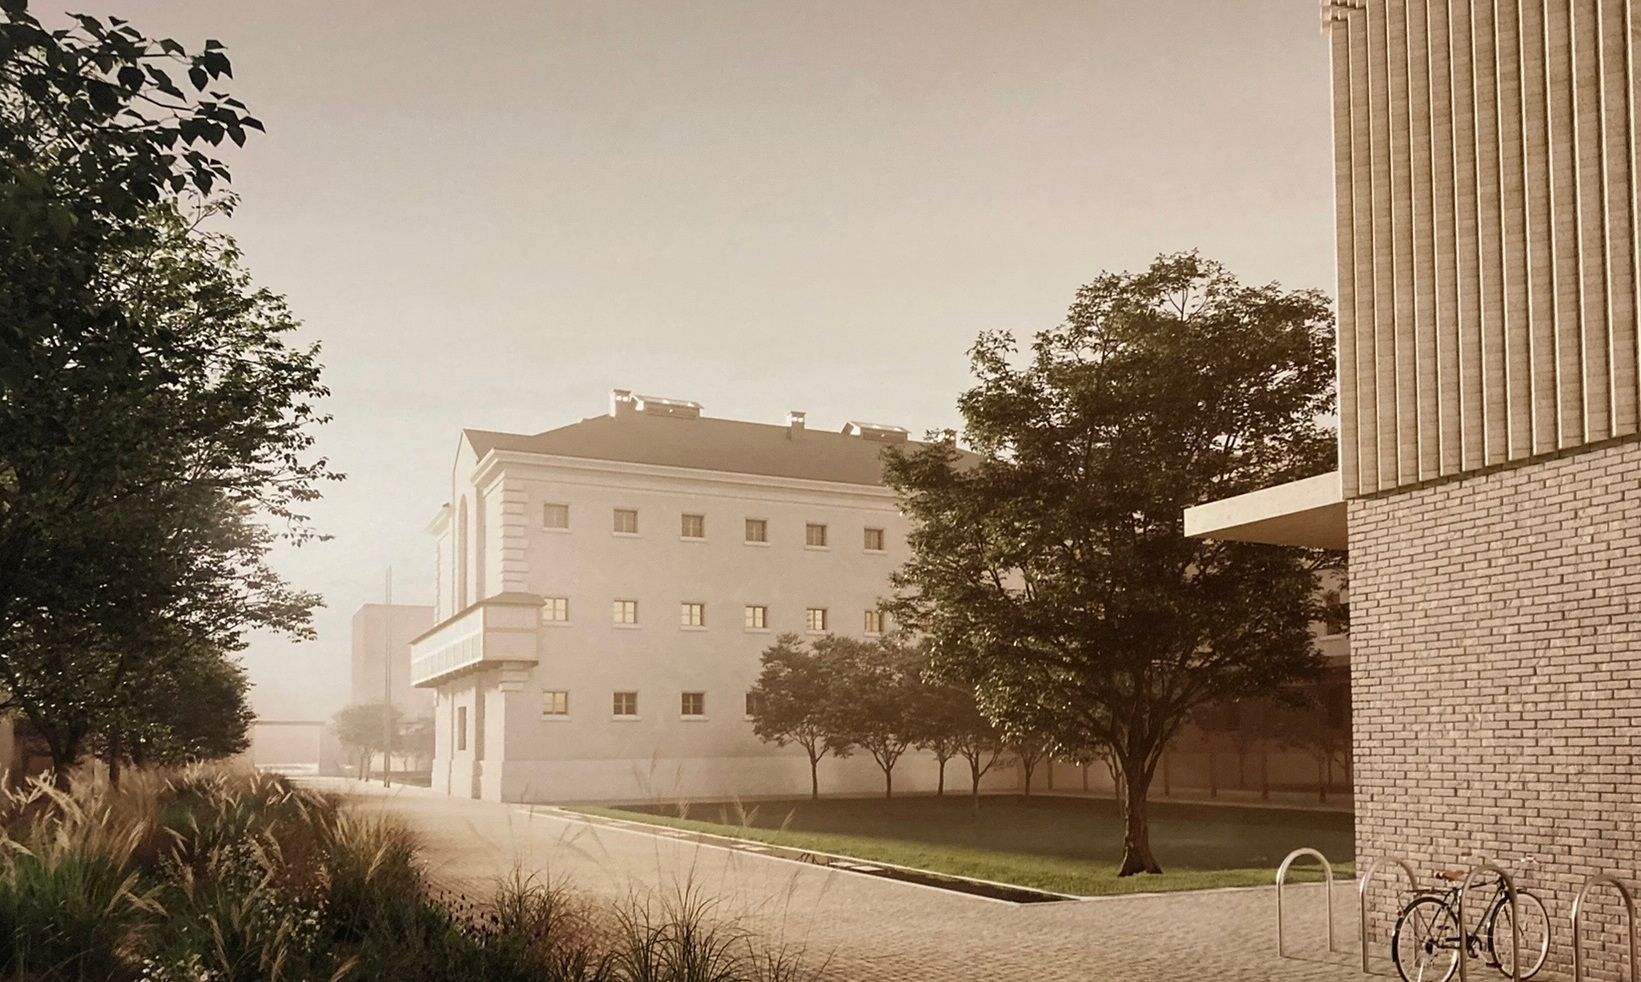 Pokud půjde vše podle plánů, v roce 2028 by dnešní areál bývalé věznice v Uherském Hradišti měl vypadat z jedné strany takto.